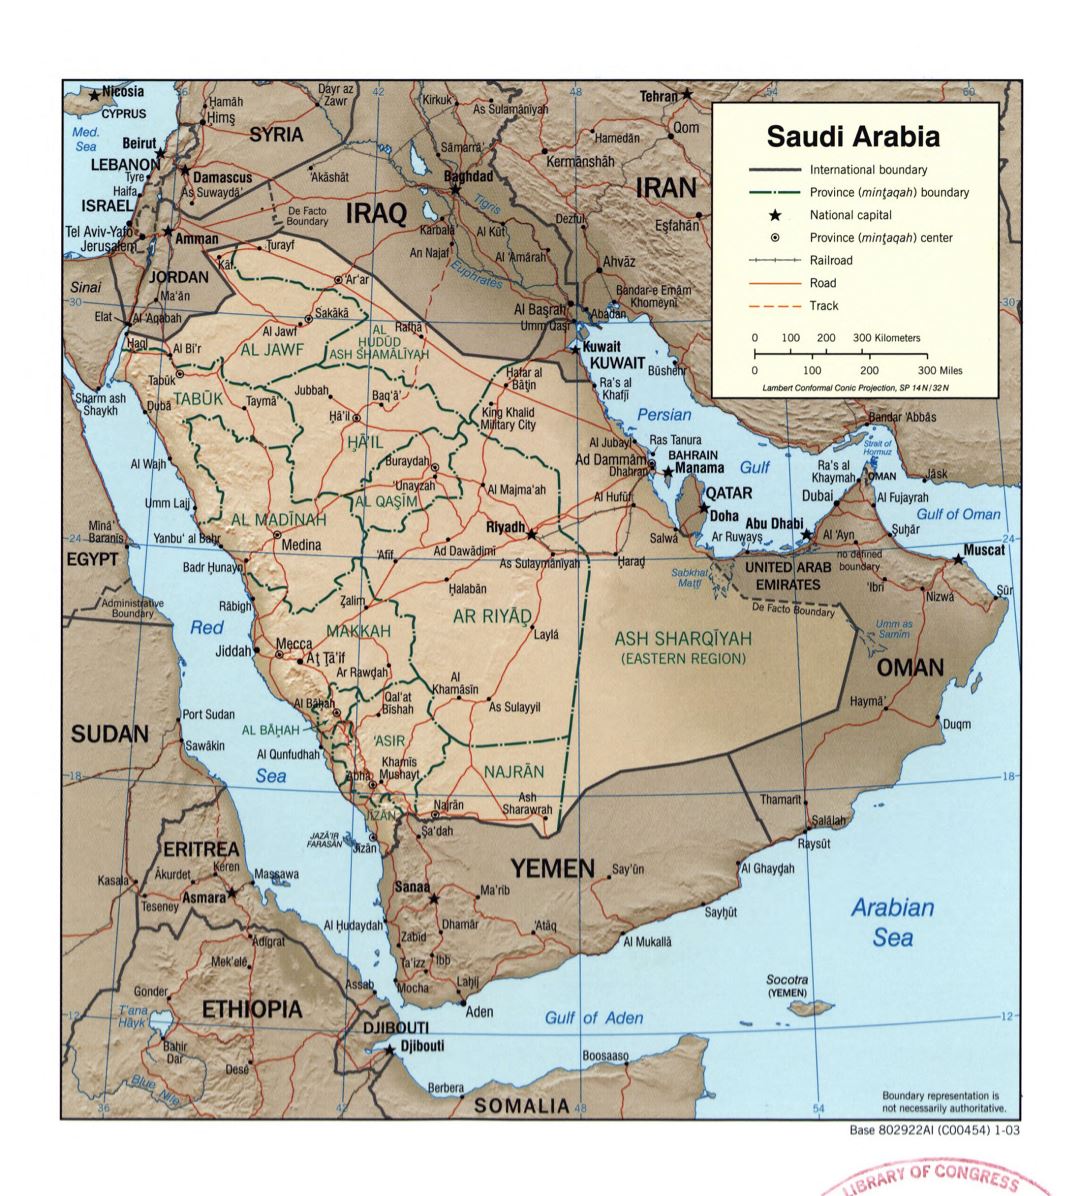 Grande detallado mapa político y administrativo de Arabia Saudita con socorro, carreteras, ferrocarriles y principales ciudades - 2003